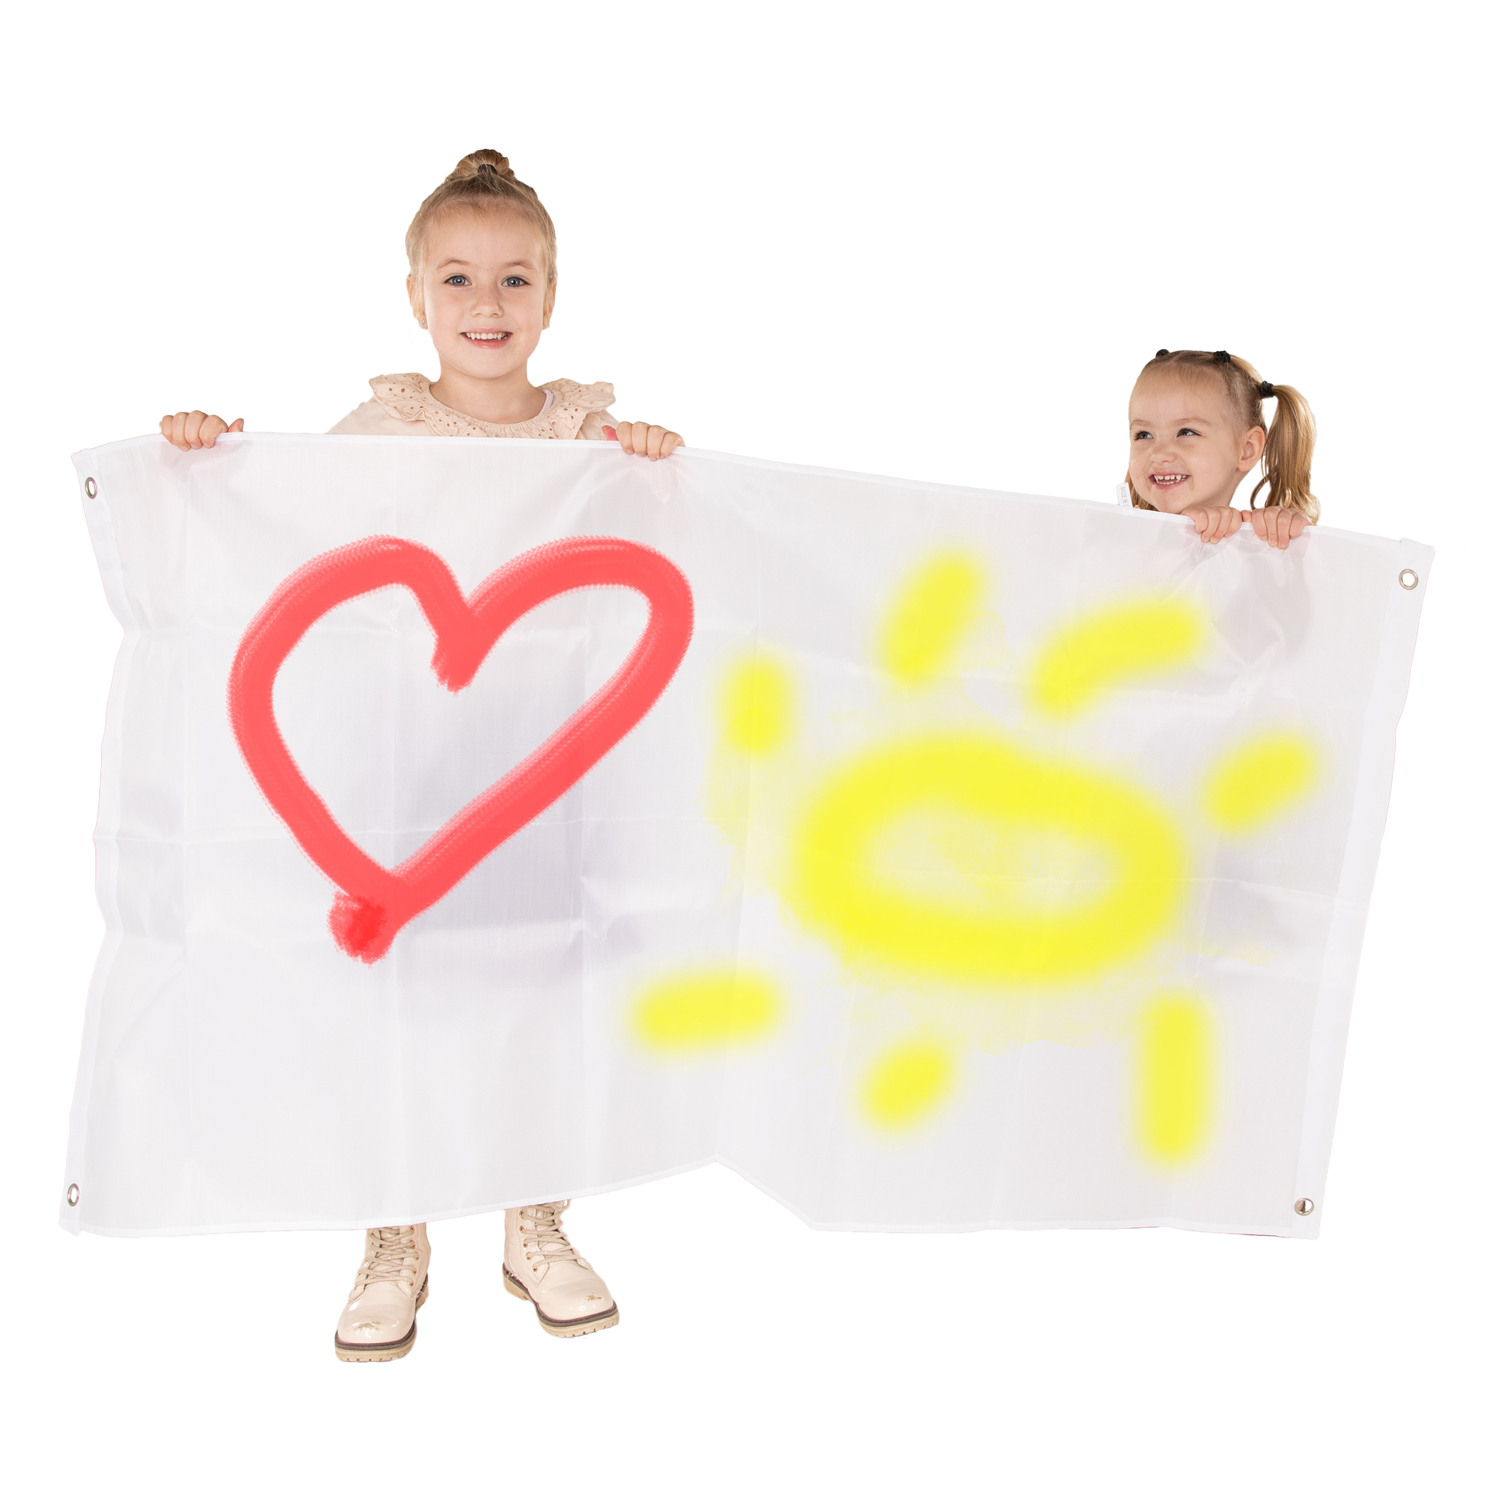 Colorations - Décorez votre propre bannière en nylon grand blanc, lot de 2